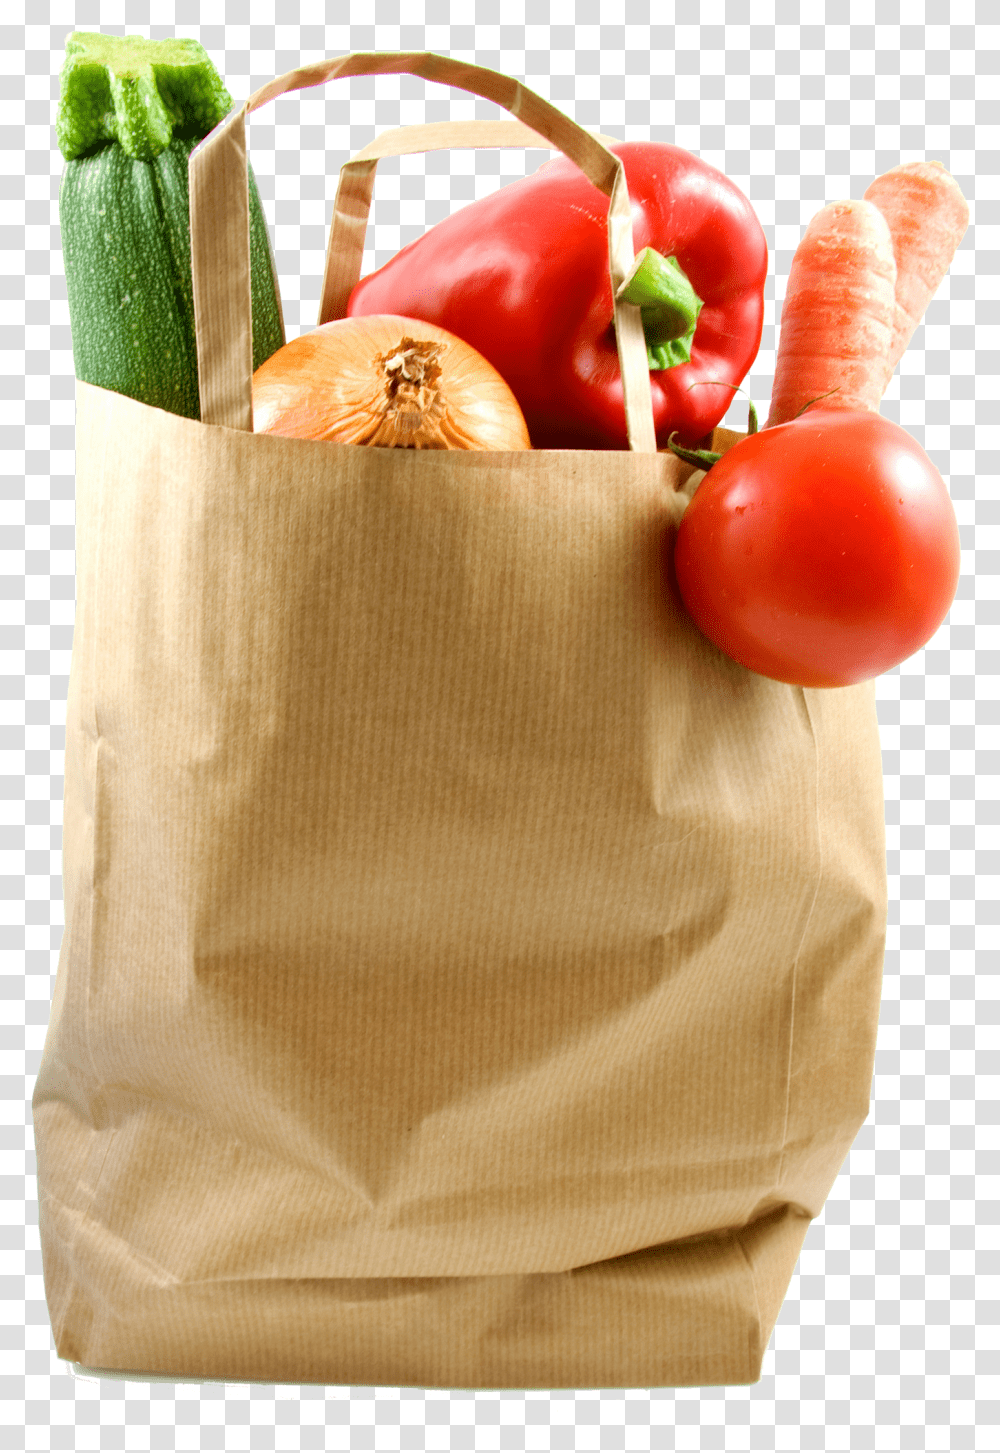 Food Bag Stock Photo Shopping Bag Food Paper, Plant, Vegetable, Rug, Sack Transparent Png